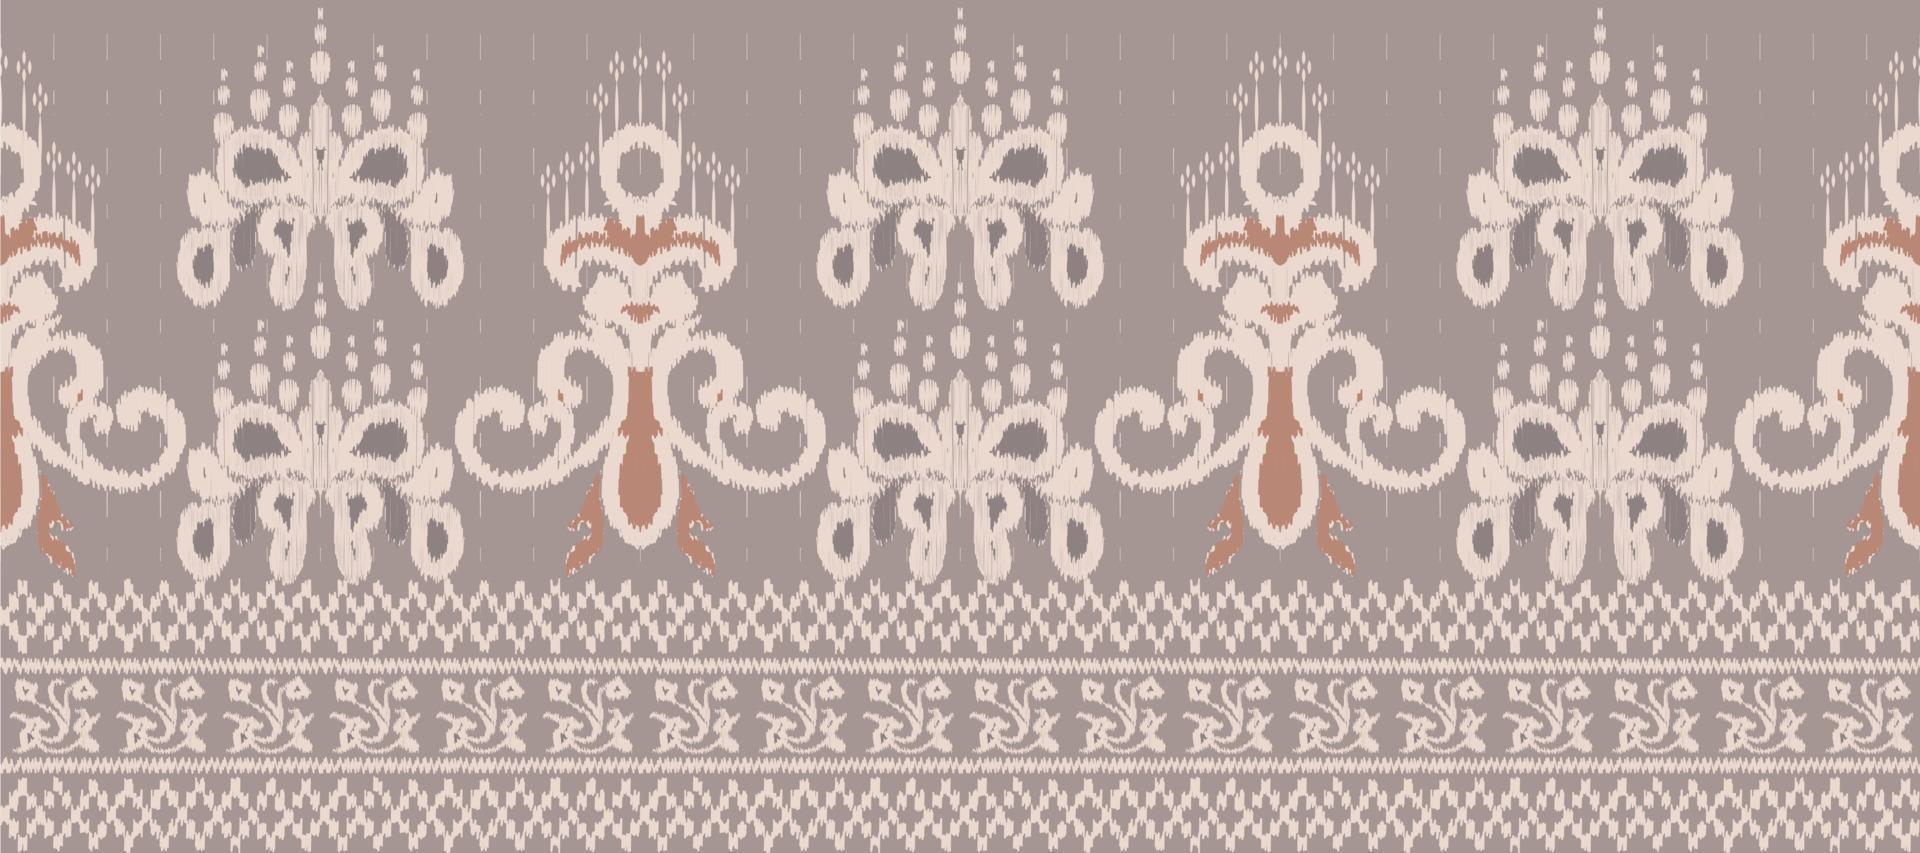 Afrikaanse ikat bloemen paisley borduurwerk achtergrond. meetkundig etnisch oosters patroon traditioneel. ikat bloem stijl abstract vector illustratie. ontwerp voor afdrukken textuur,stof,sari,sari,tapijt.